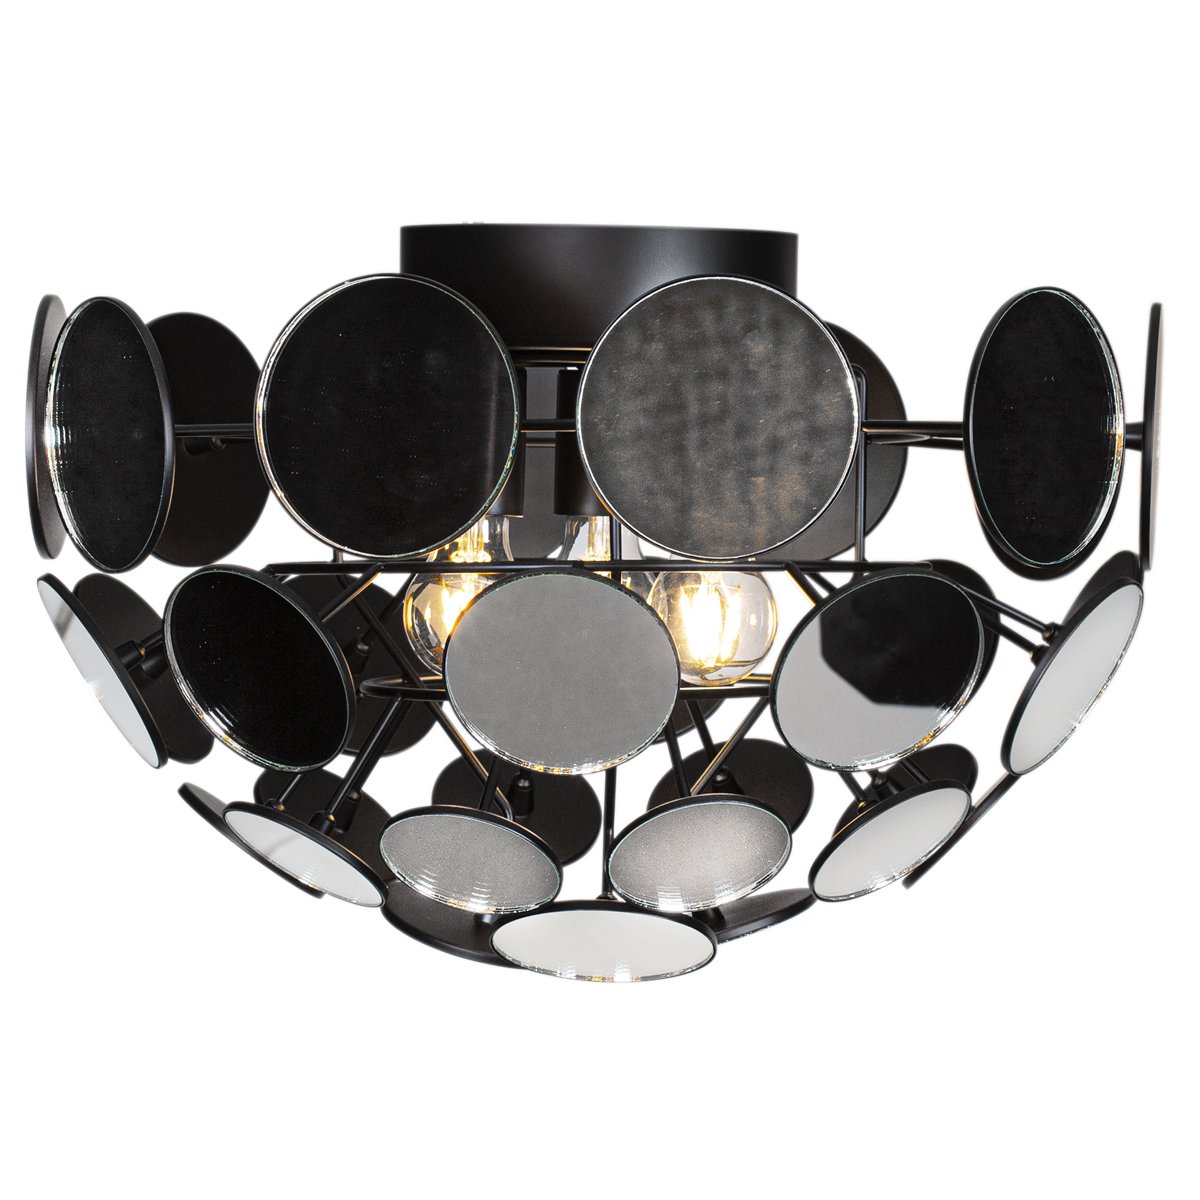 By Rydéns 4201990-7004 Deckenleuchte Vanita spiegel schwarz E27 --> Leuchten  & Lampen online kaufen im Shop